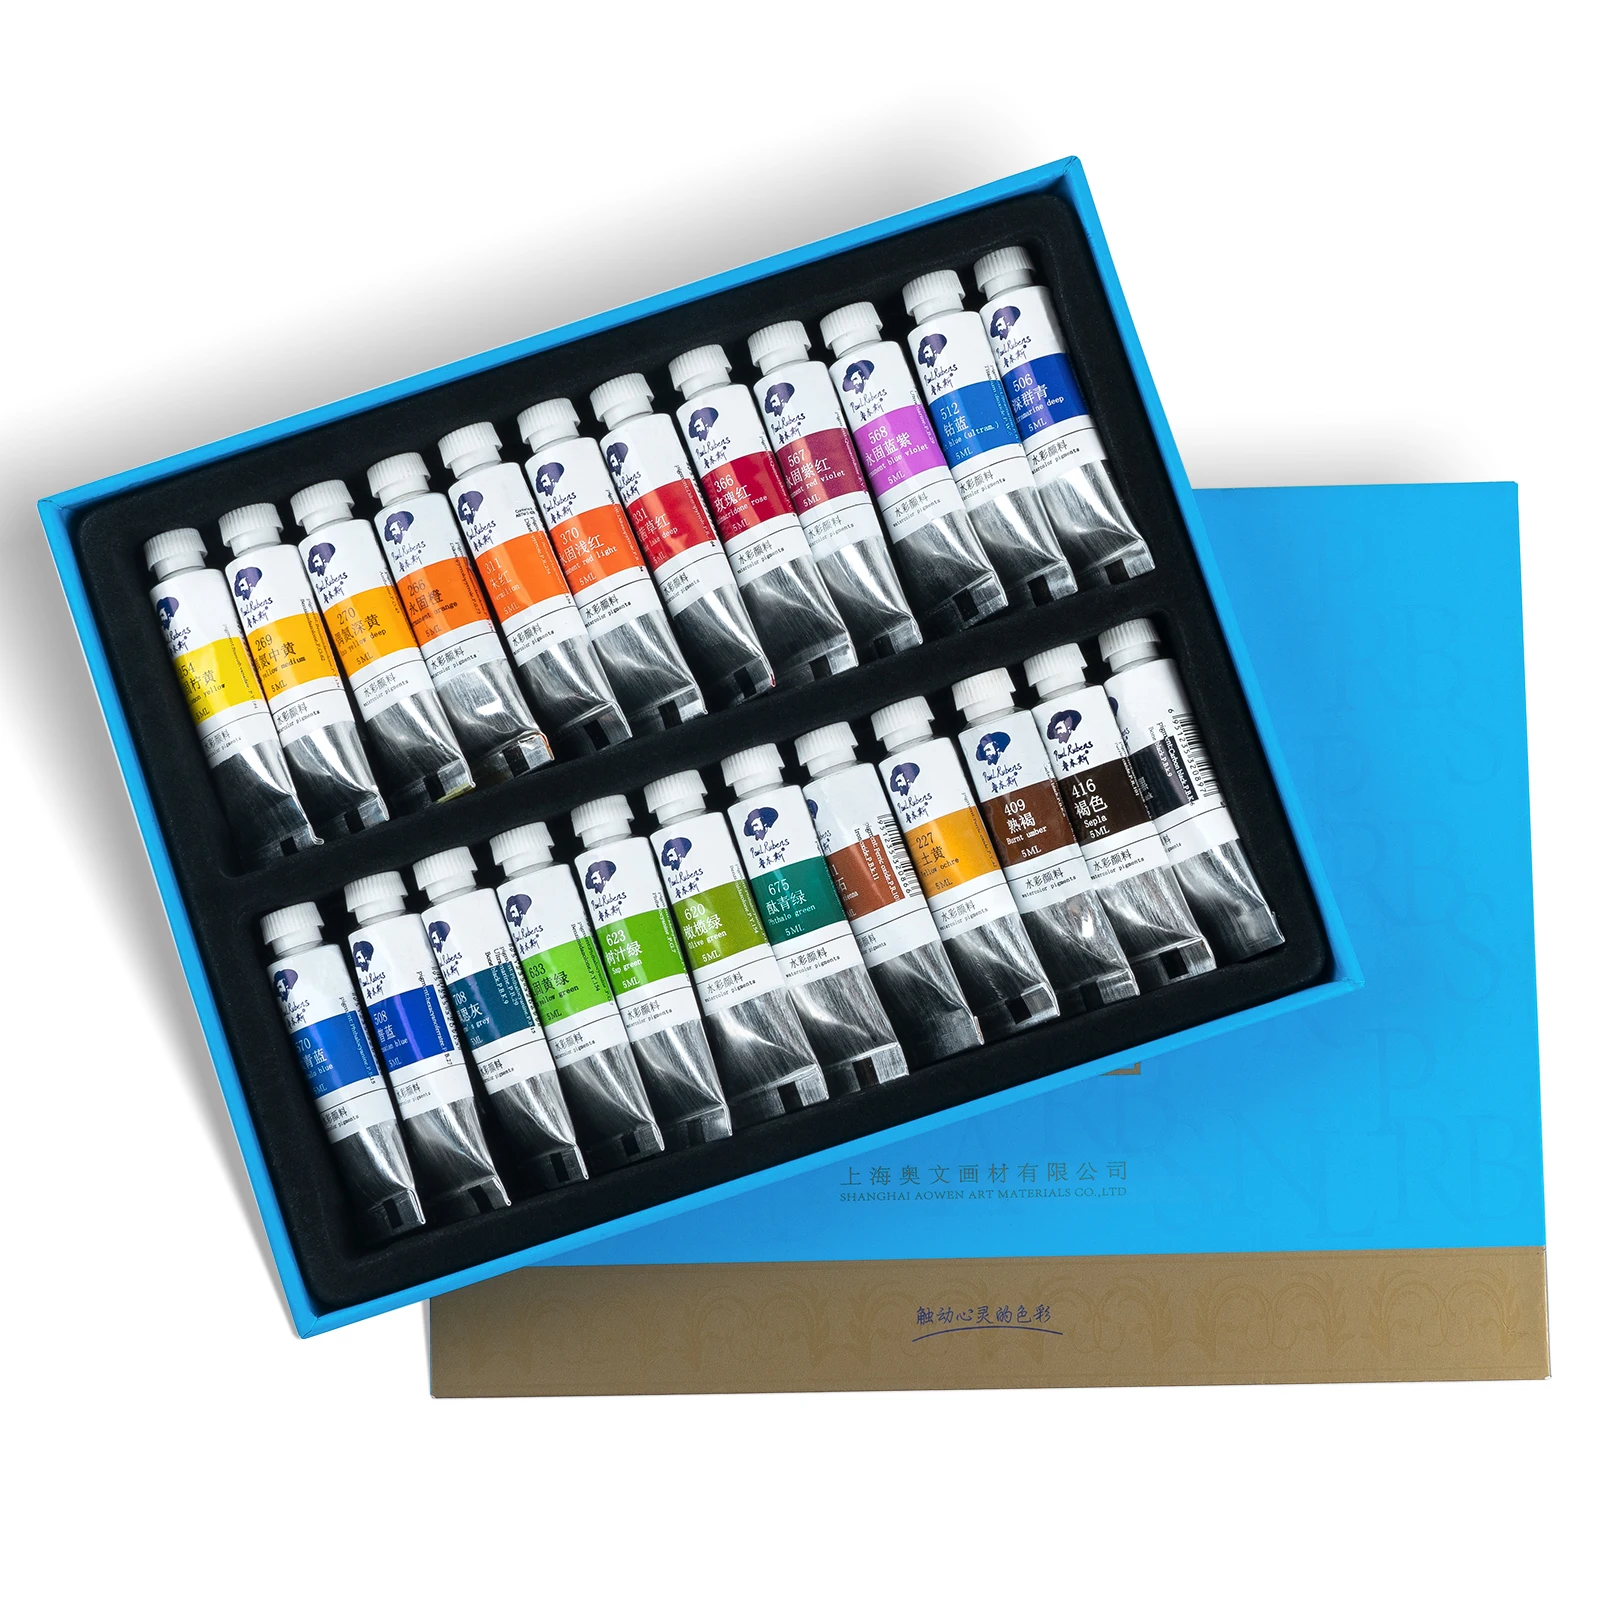 

Paul Rubens Tube набор акварельных красок 24 цвета Акварельная краска для студентов начинающих художников любителей